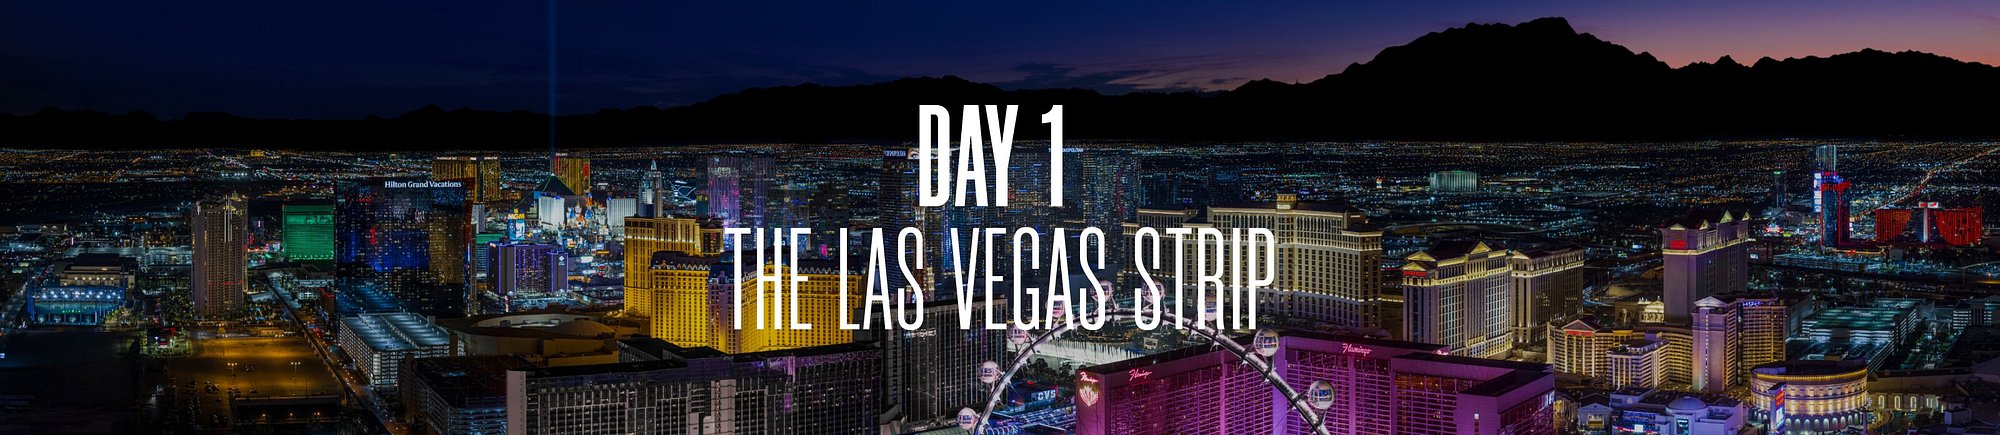 Day 1: The Las Vegas Strip